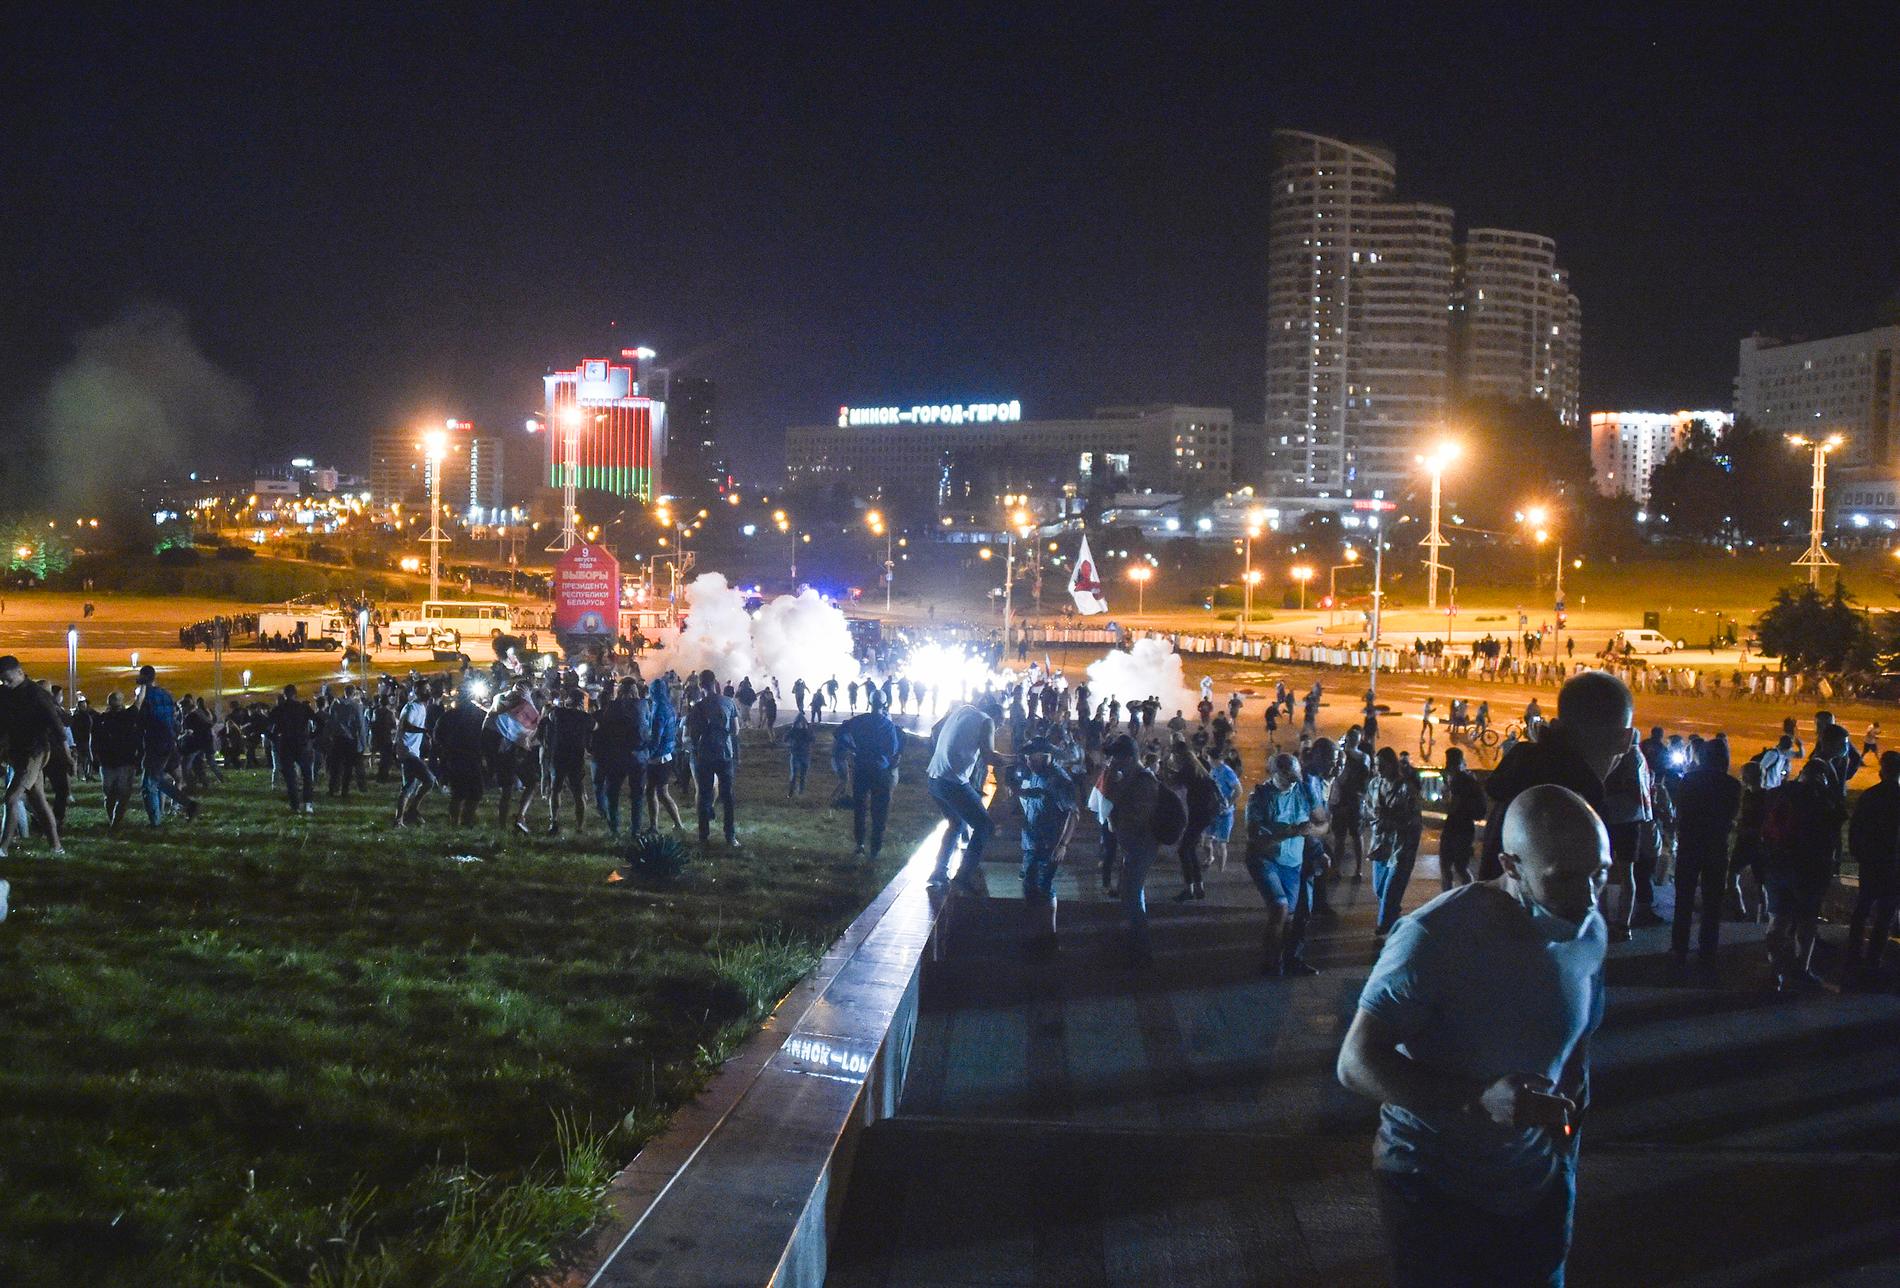 Polis drabbade samman med demonstrerande i bland annat huvudstaden Minsk på söndagen.